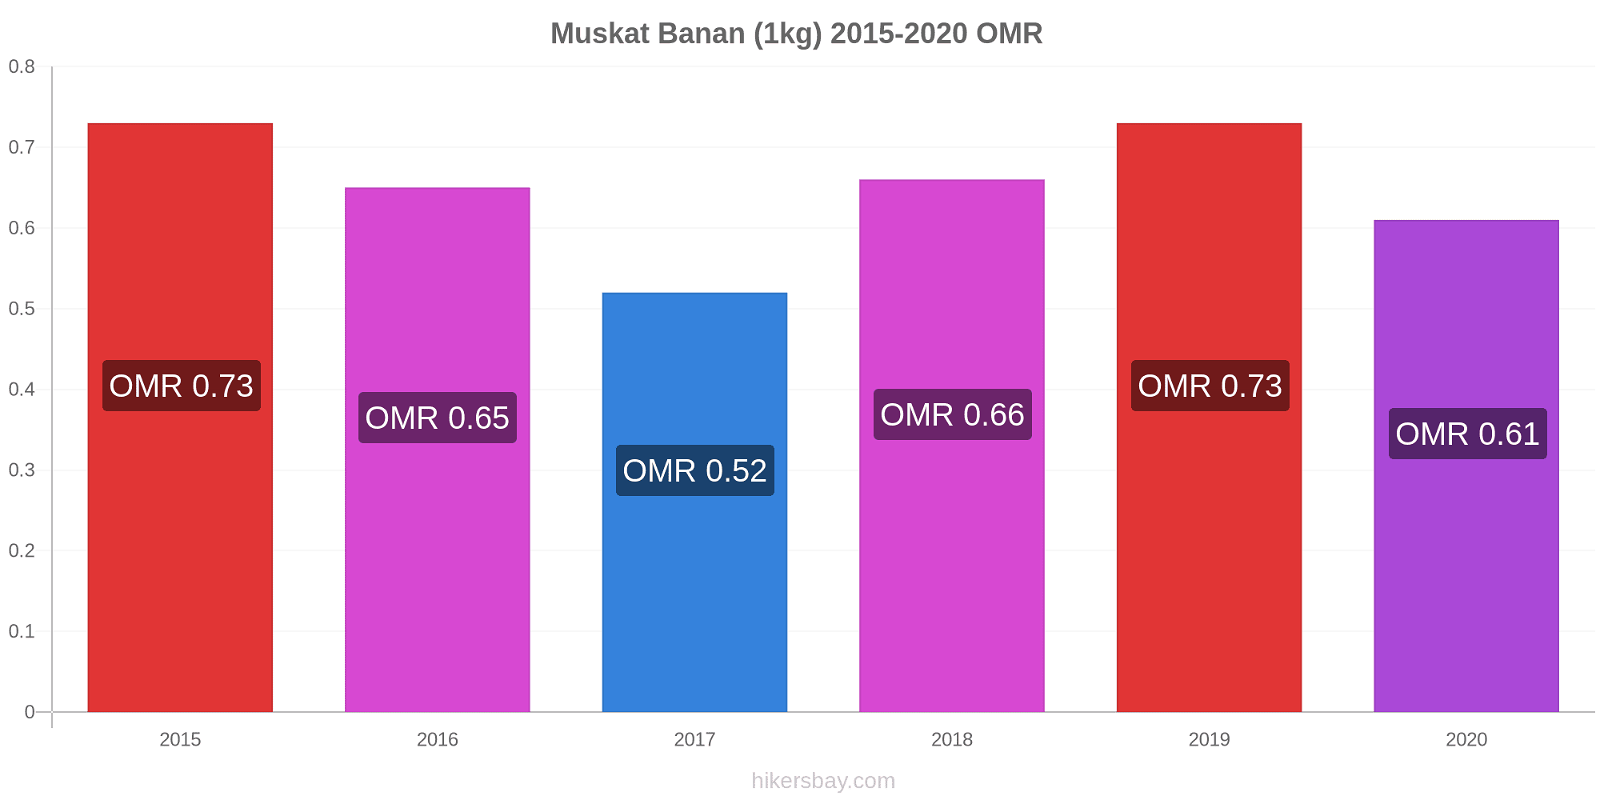 Muskat prisendringer Banan (1kg) hikersbay.com